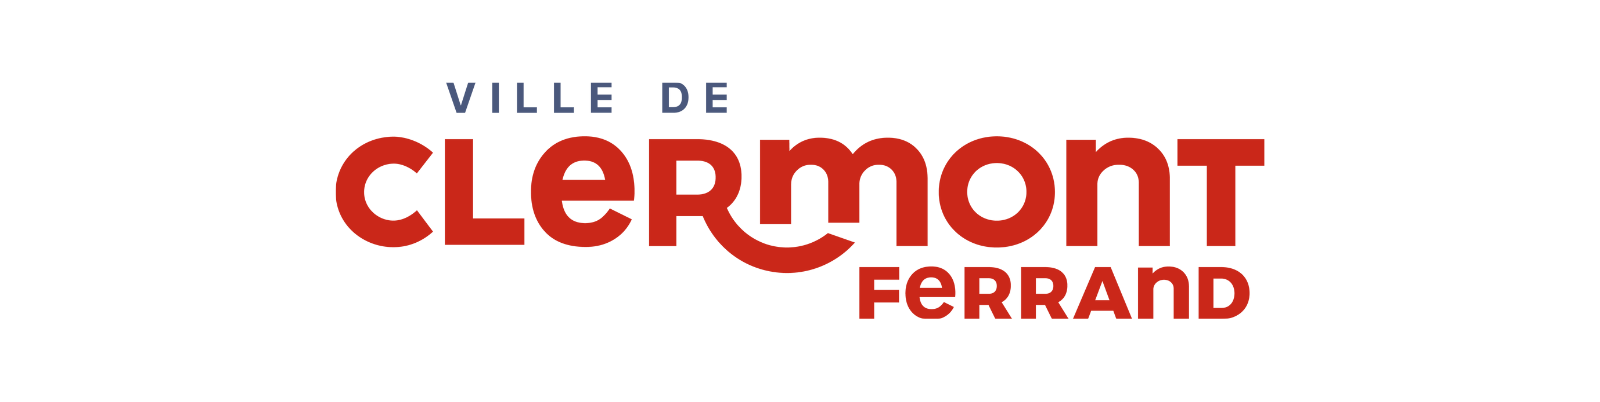 Ville Clermont-Fd logo 1600